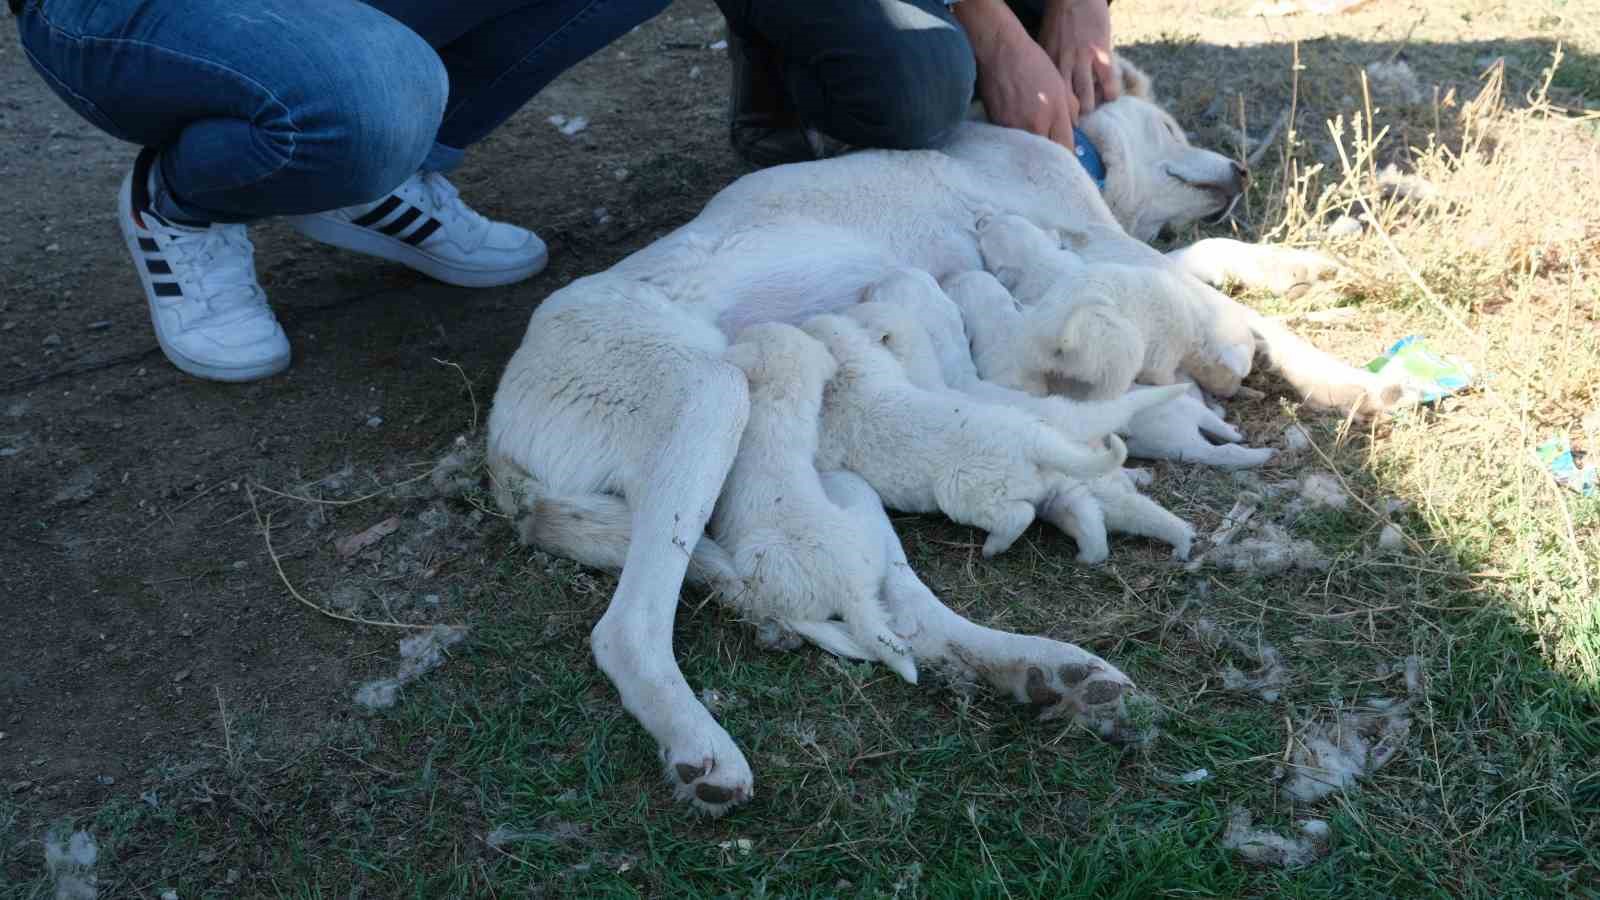 (ÖZEL) Annesiz kalan yavruları başka bir Akbaş cinsi köpek sahiplendi